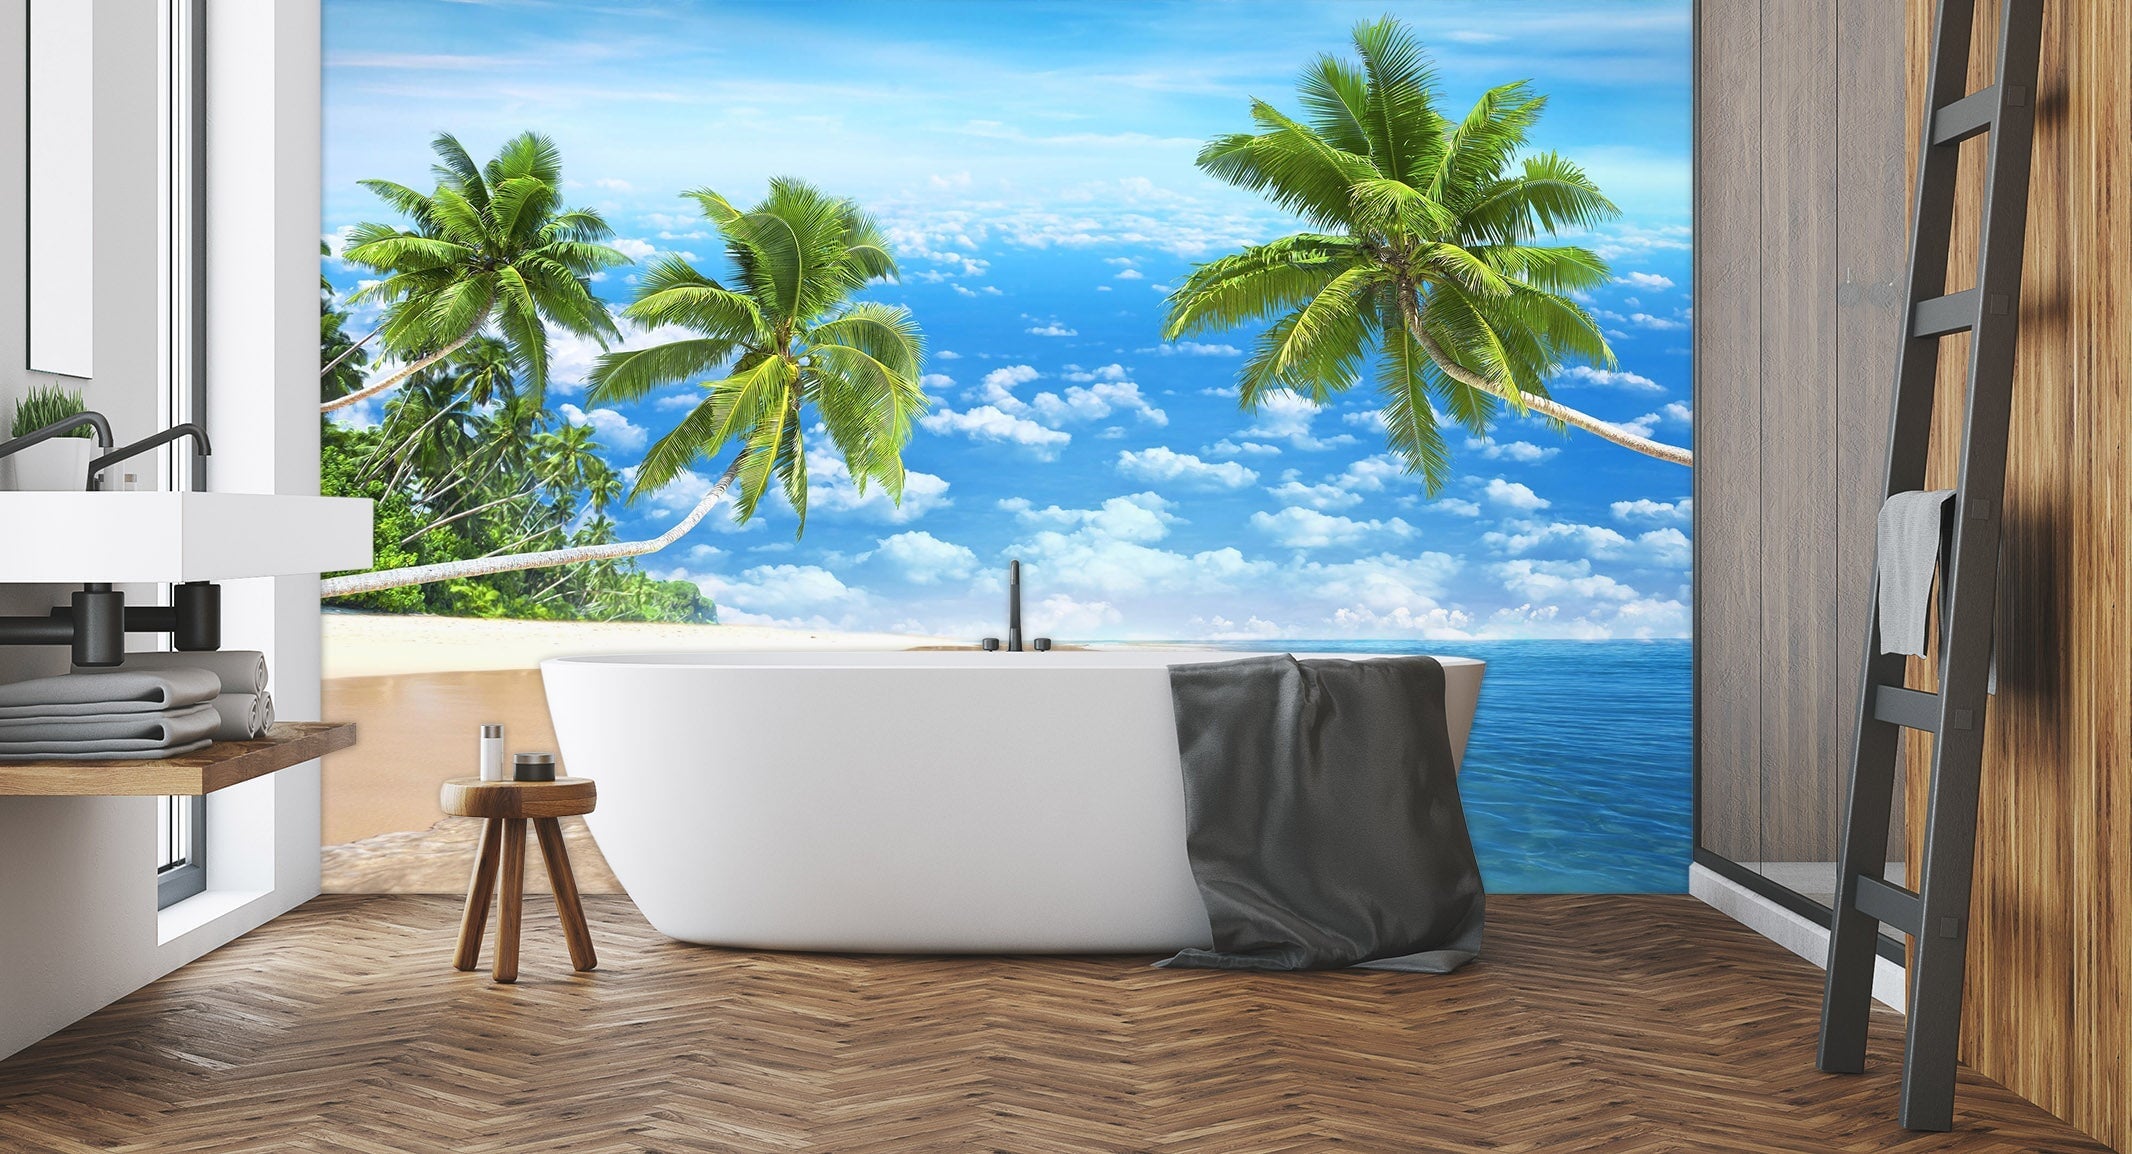 3D Ocean Coconut Tree 003 Wall Murals Wallpaper AJ Wallpaper 2 